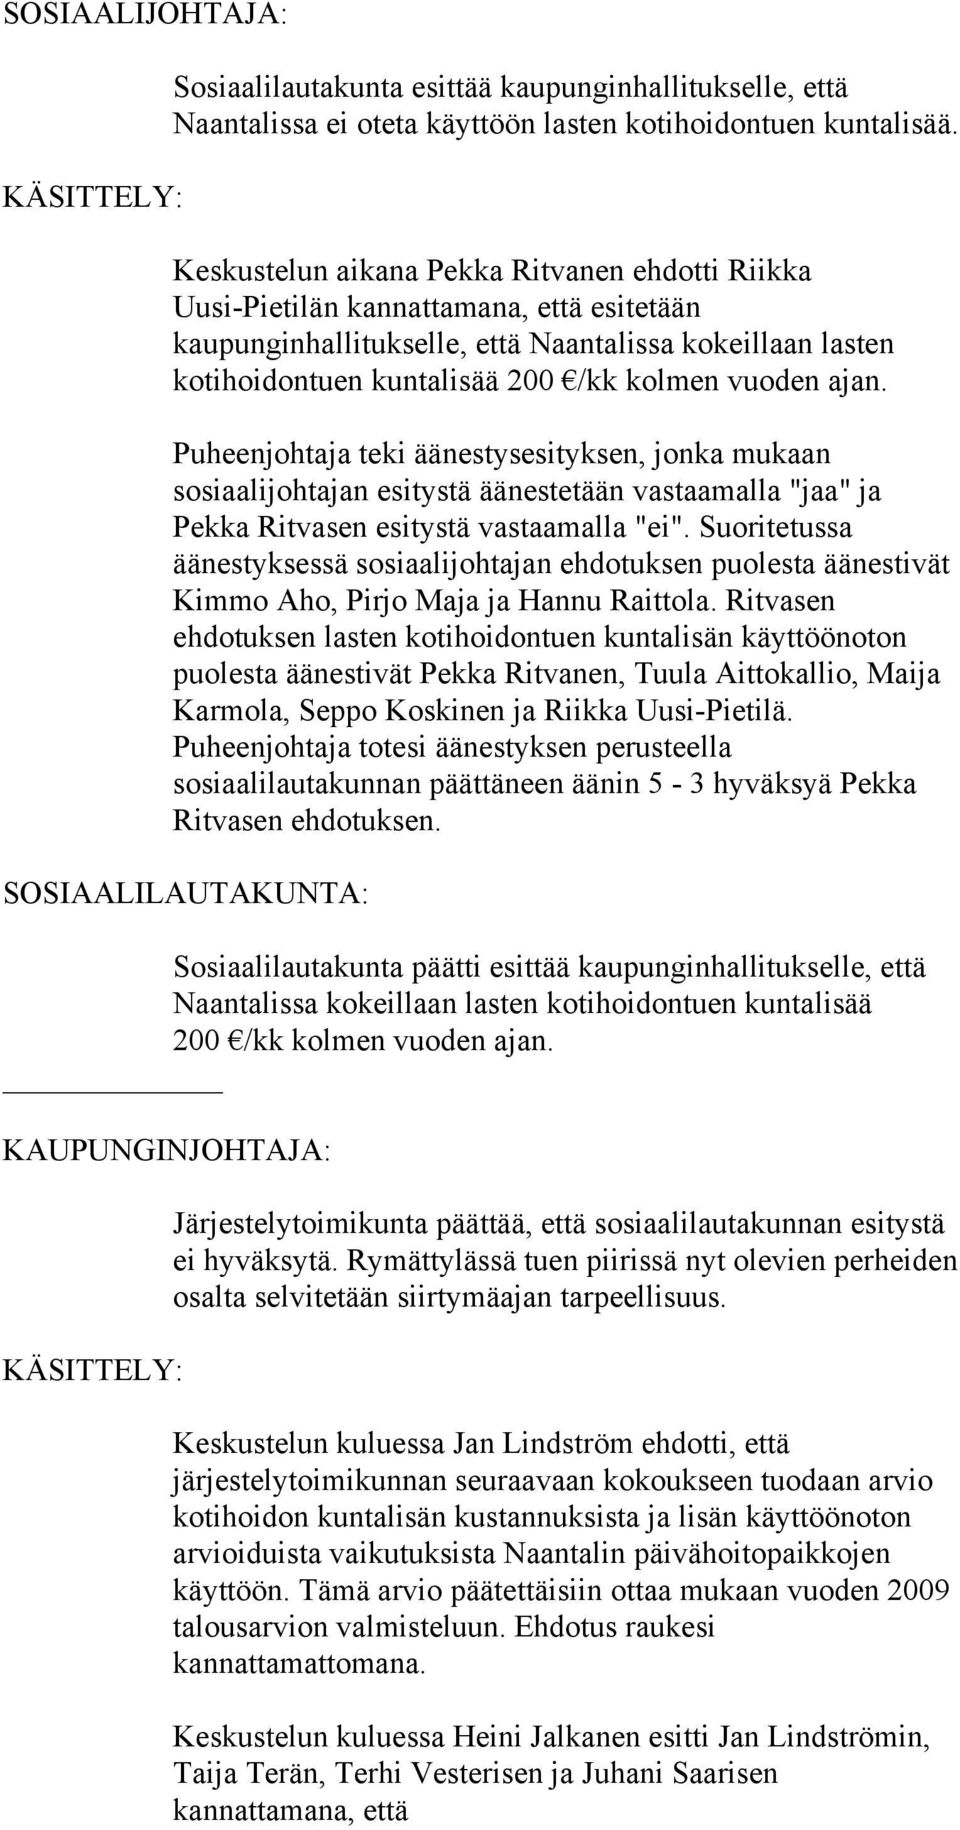 ajan. Puheenjohtaja teki äänestysesityksen, jonka mukaan sosiaalijohtajan esitystä äänestetään vastaamalla "jaa" ja Pekka Ritvasen esitystä vastaamalla "ei".